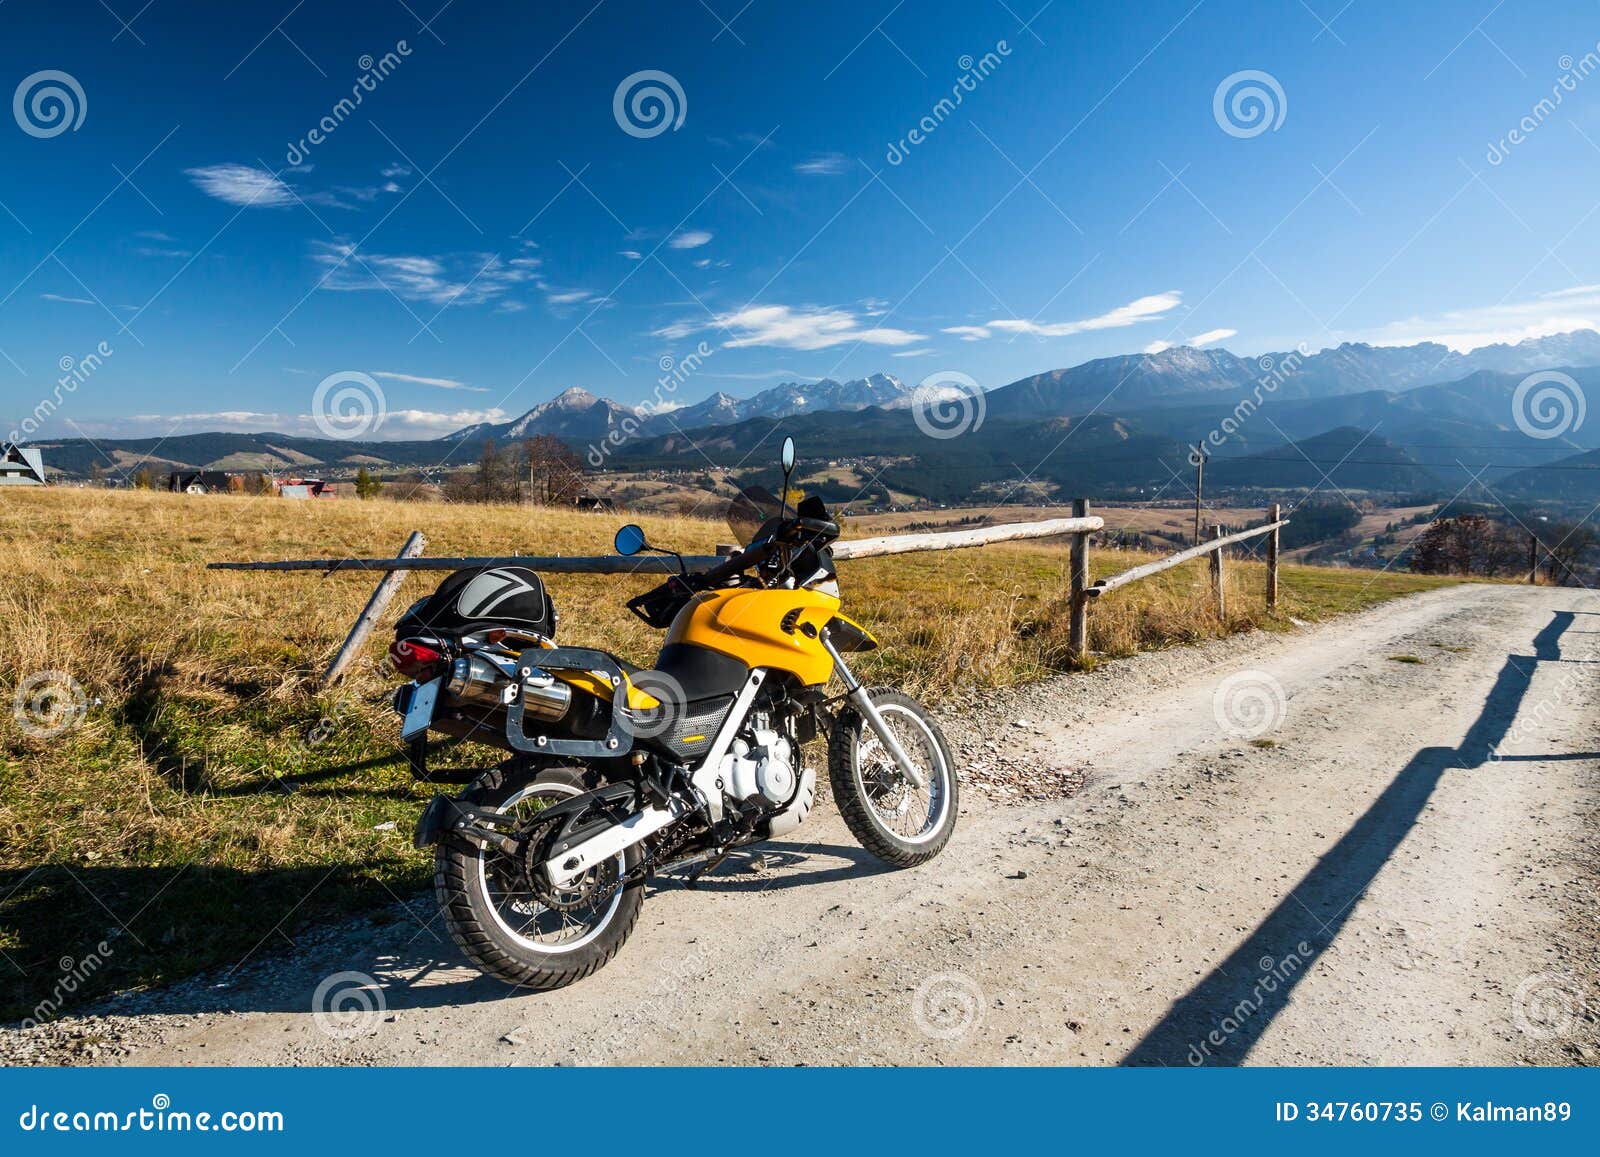 riding mountains on motorbike